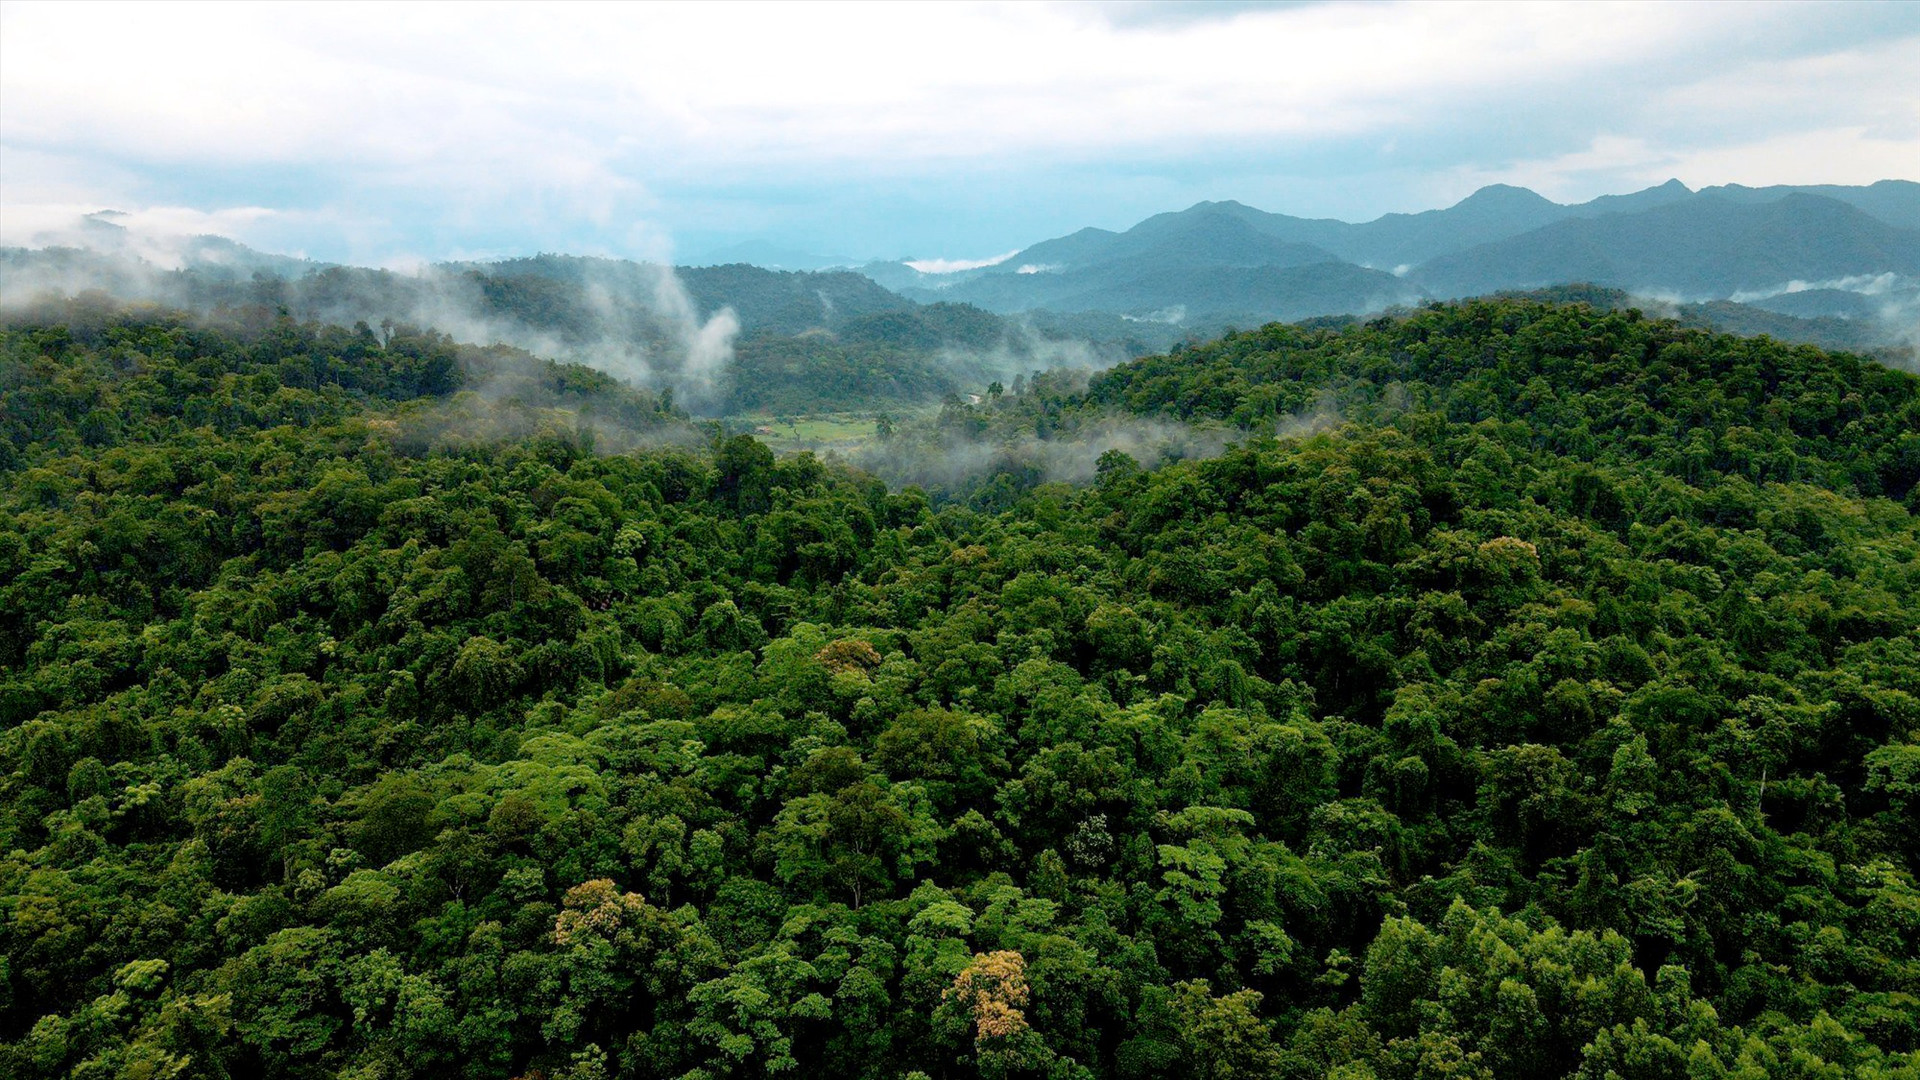 Cánh rừng nguyên sinh vùng biên Tây Giang kỳ vọng sẽ được bảo vệ tốt thông qua các dự án WWF tài trợ. Ảnh: H.Q